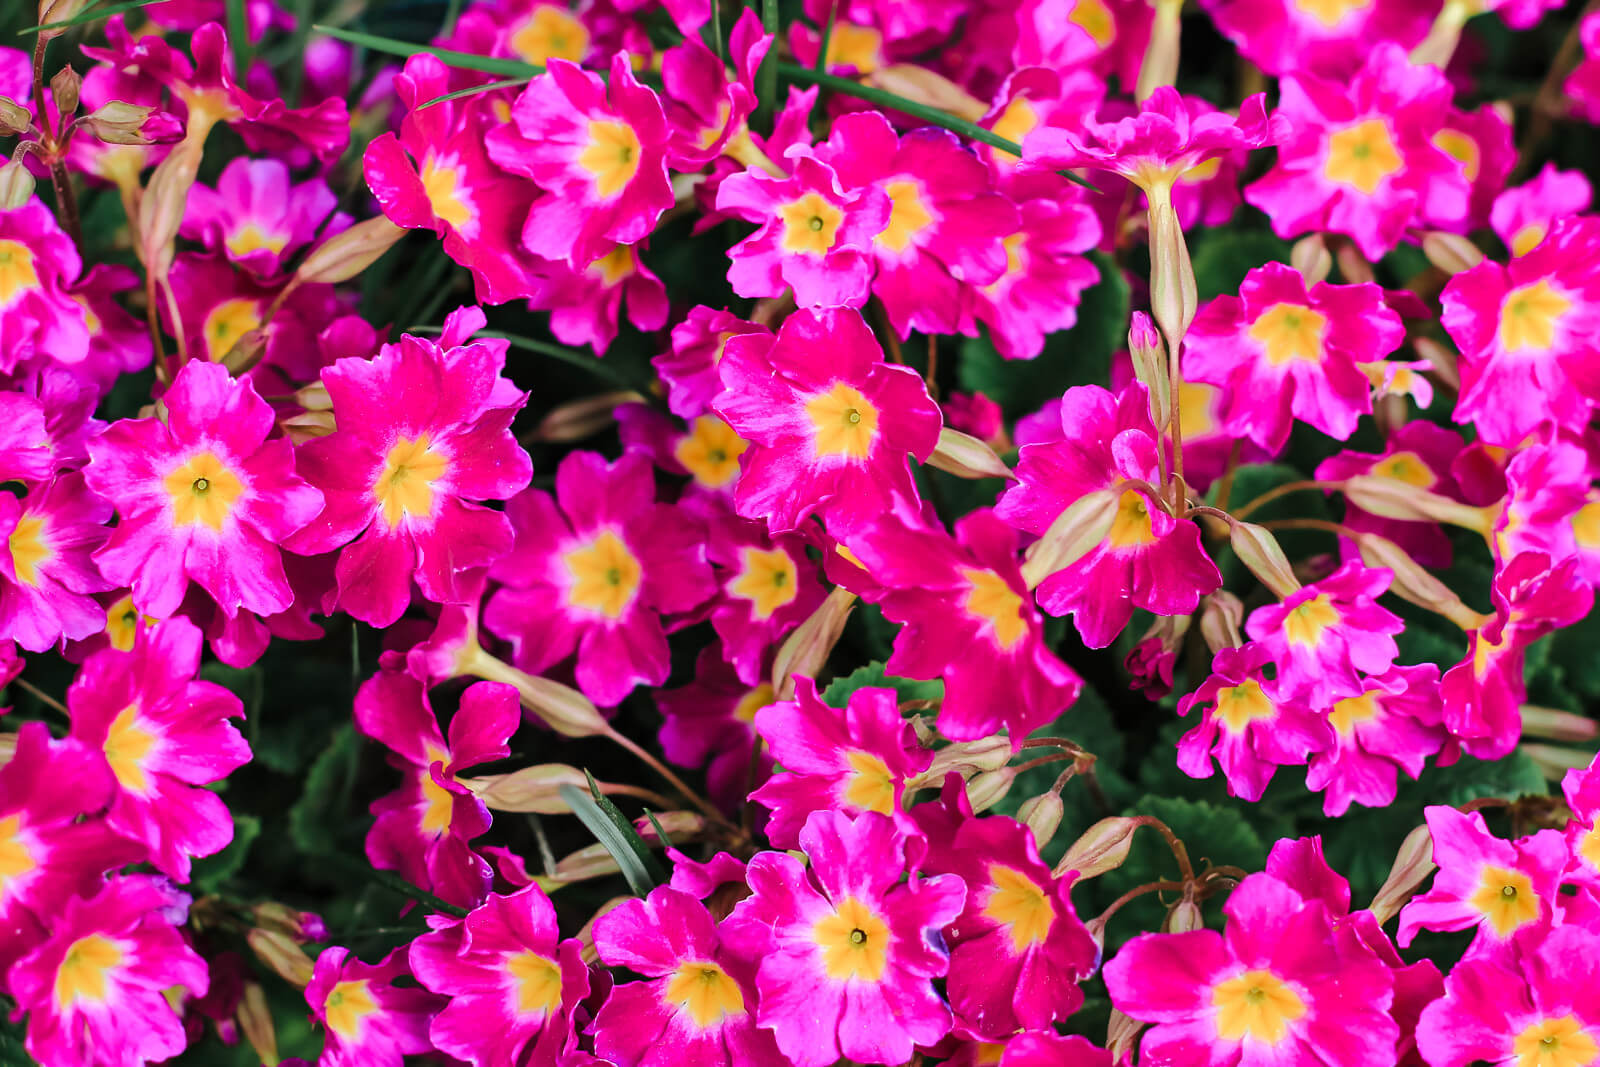 Primevère (Primula spp.), la première fleur du printemps : plantation,  culture, entretien